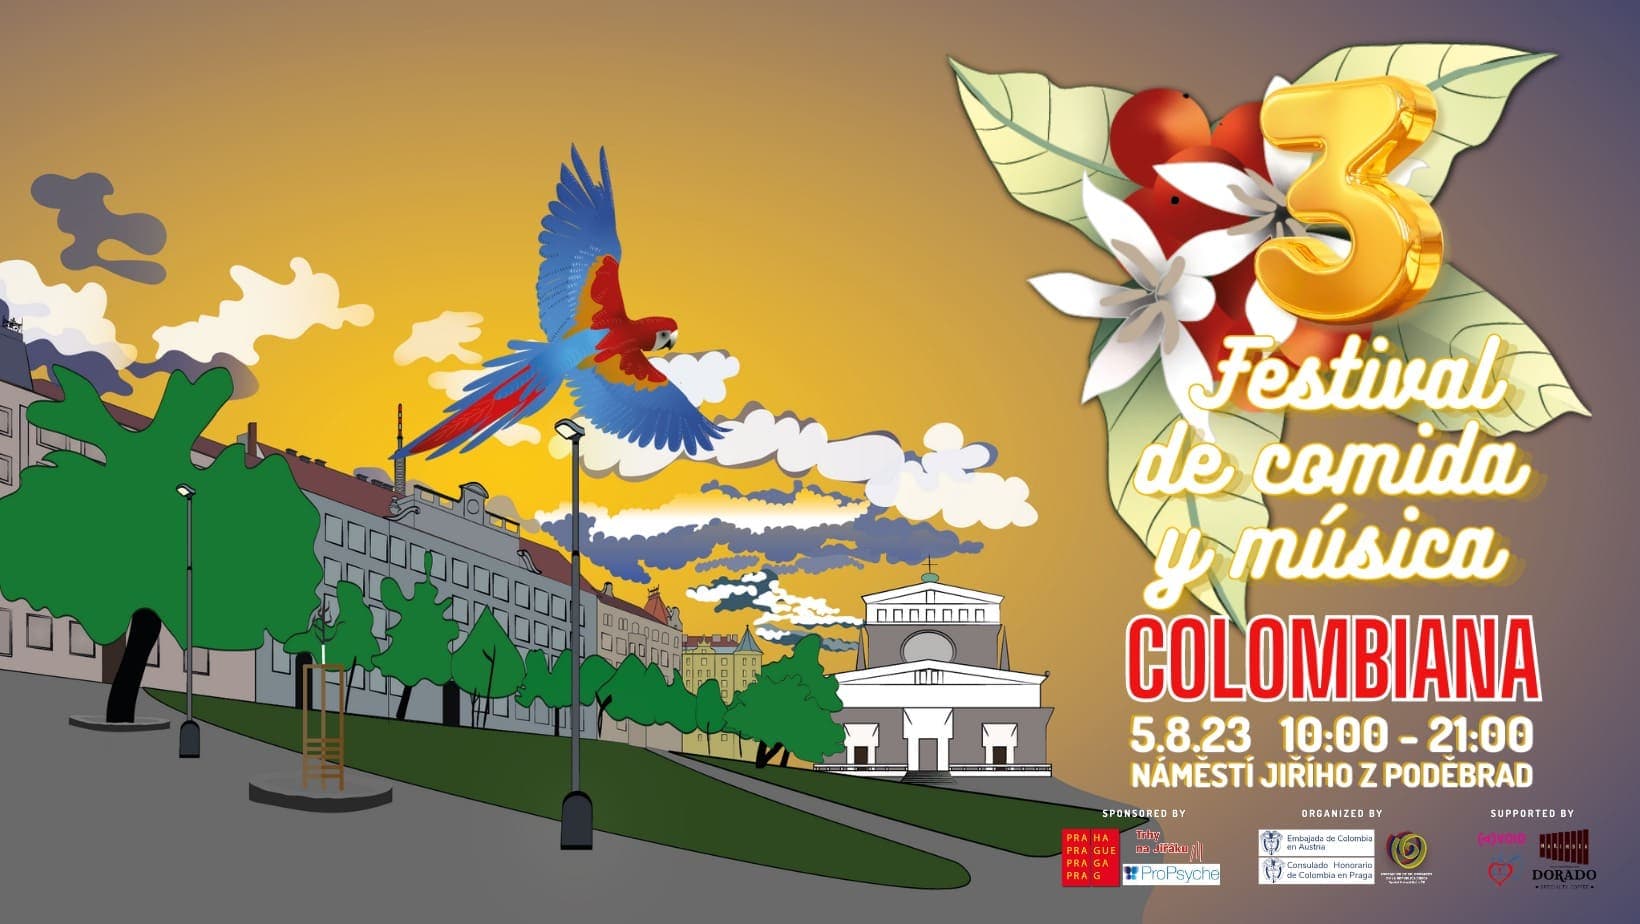 5 августа в Праге пройдет Колумбийский фестиваль еды и музыки